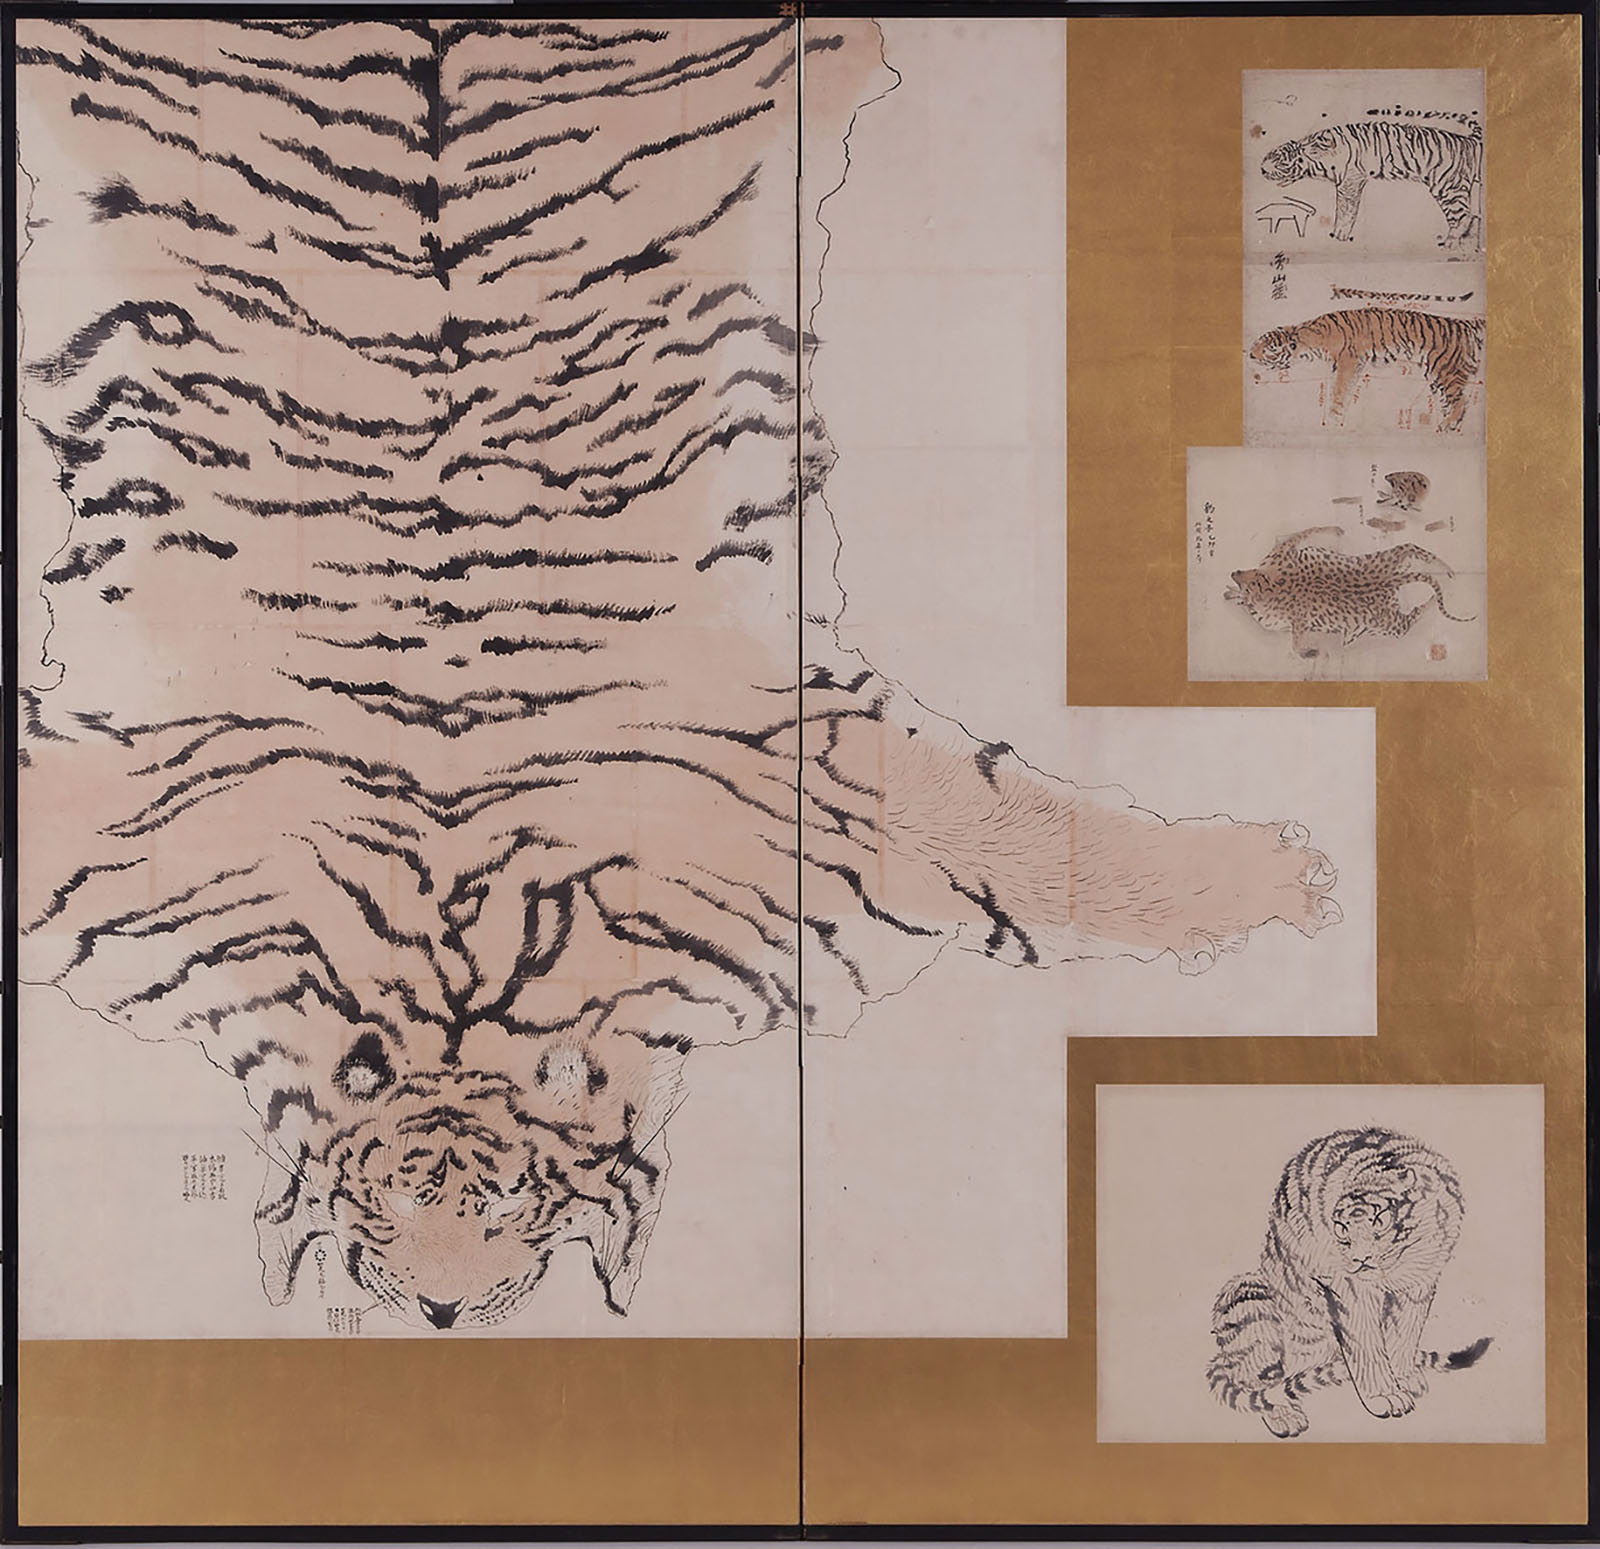 【美術展覧会場】江戸時代の絵画 ―百花繚乱の画家たちの競演―